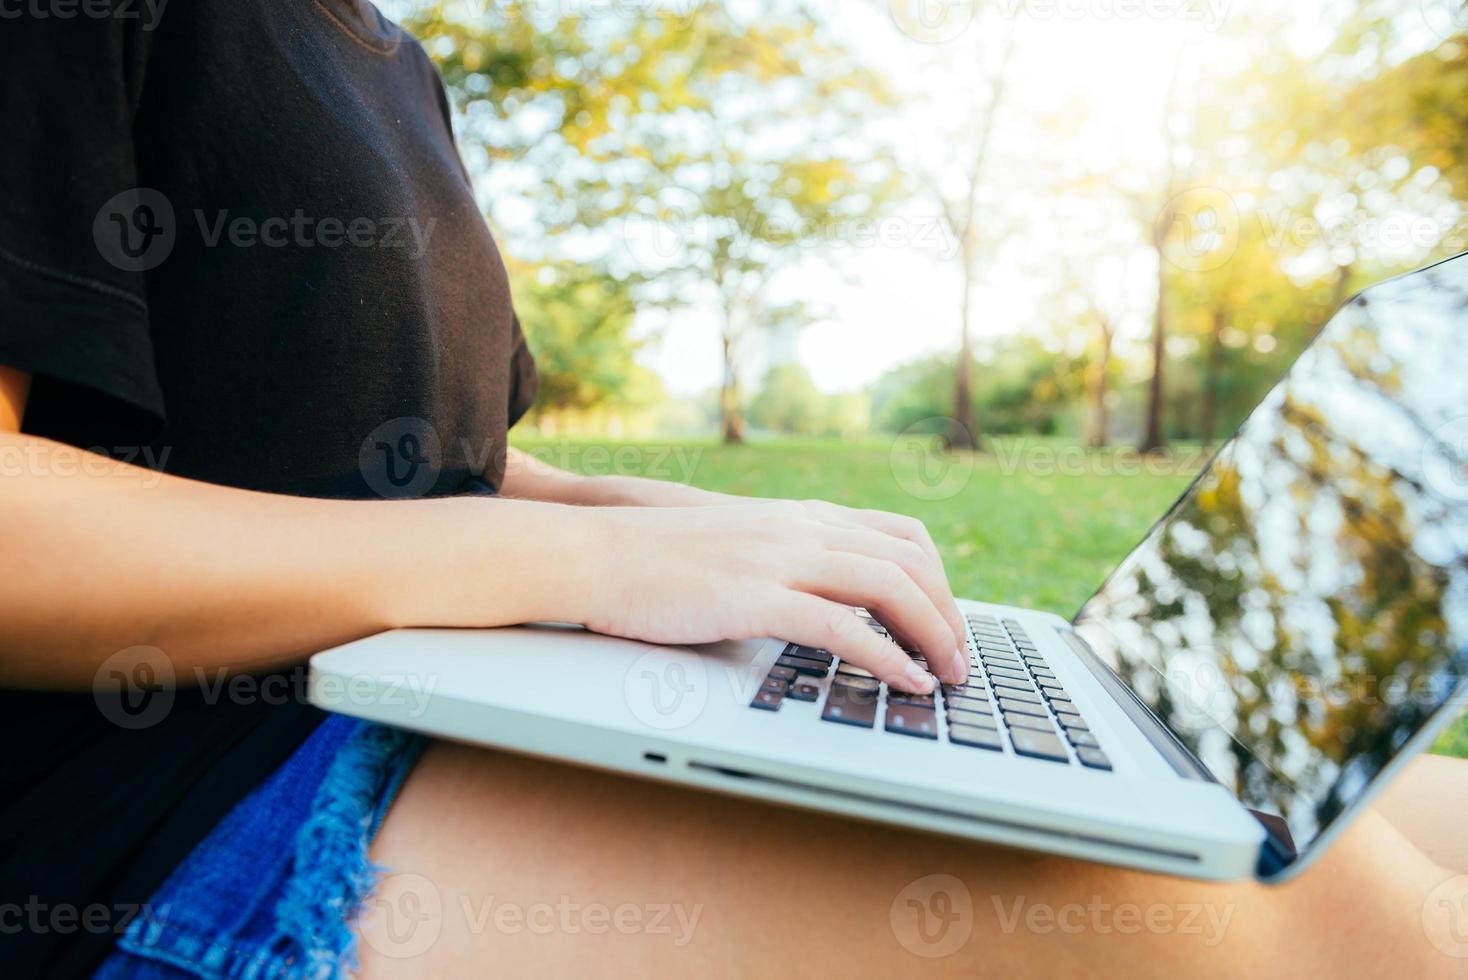 les jambes de la jeune femme asiatique sur l'herbe verte avec un ordinateur portable ouvert. les mains de la fille sur le clavier. concept d'apprentissage à distance. heureux hipster jeune femme asiatique travaillant sur ordinateur portable dans le parc. étudiant étudiant à l'extérieur. photo